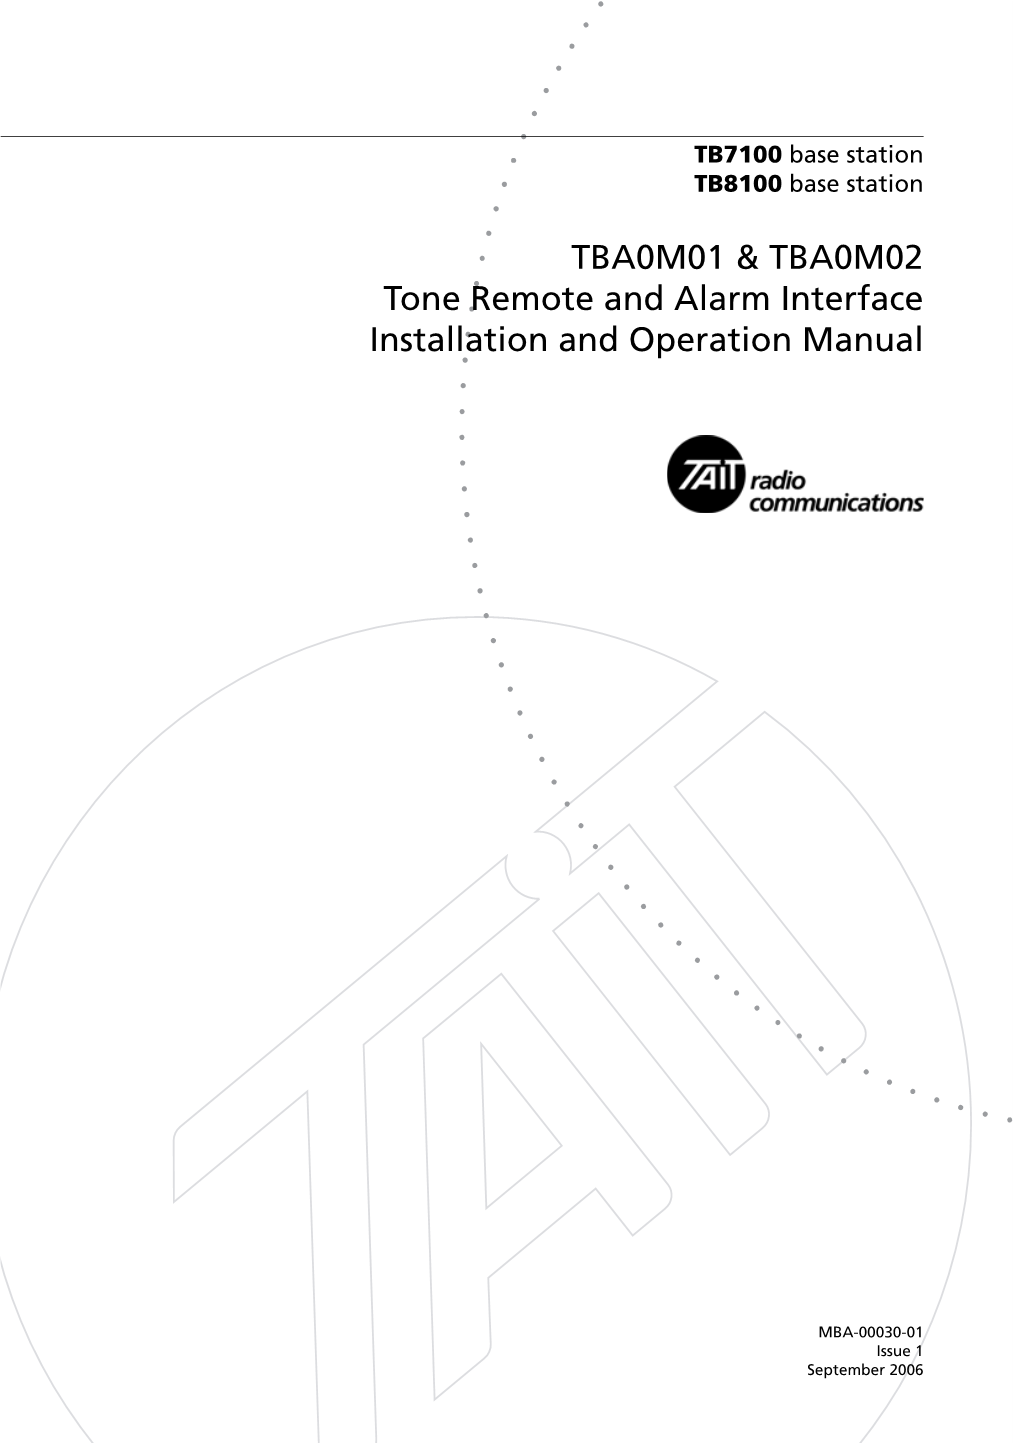 Tba0m0x Tone Remote Product